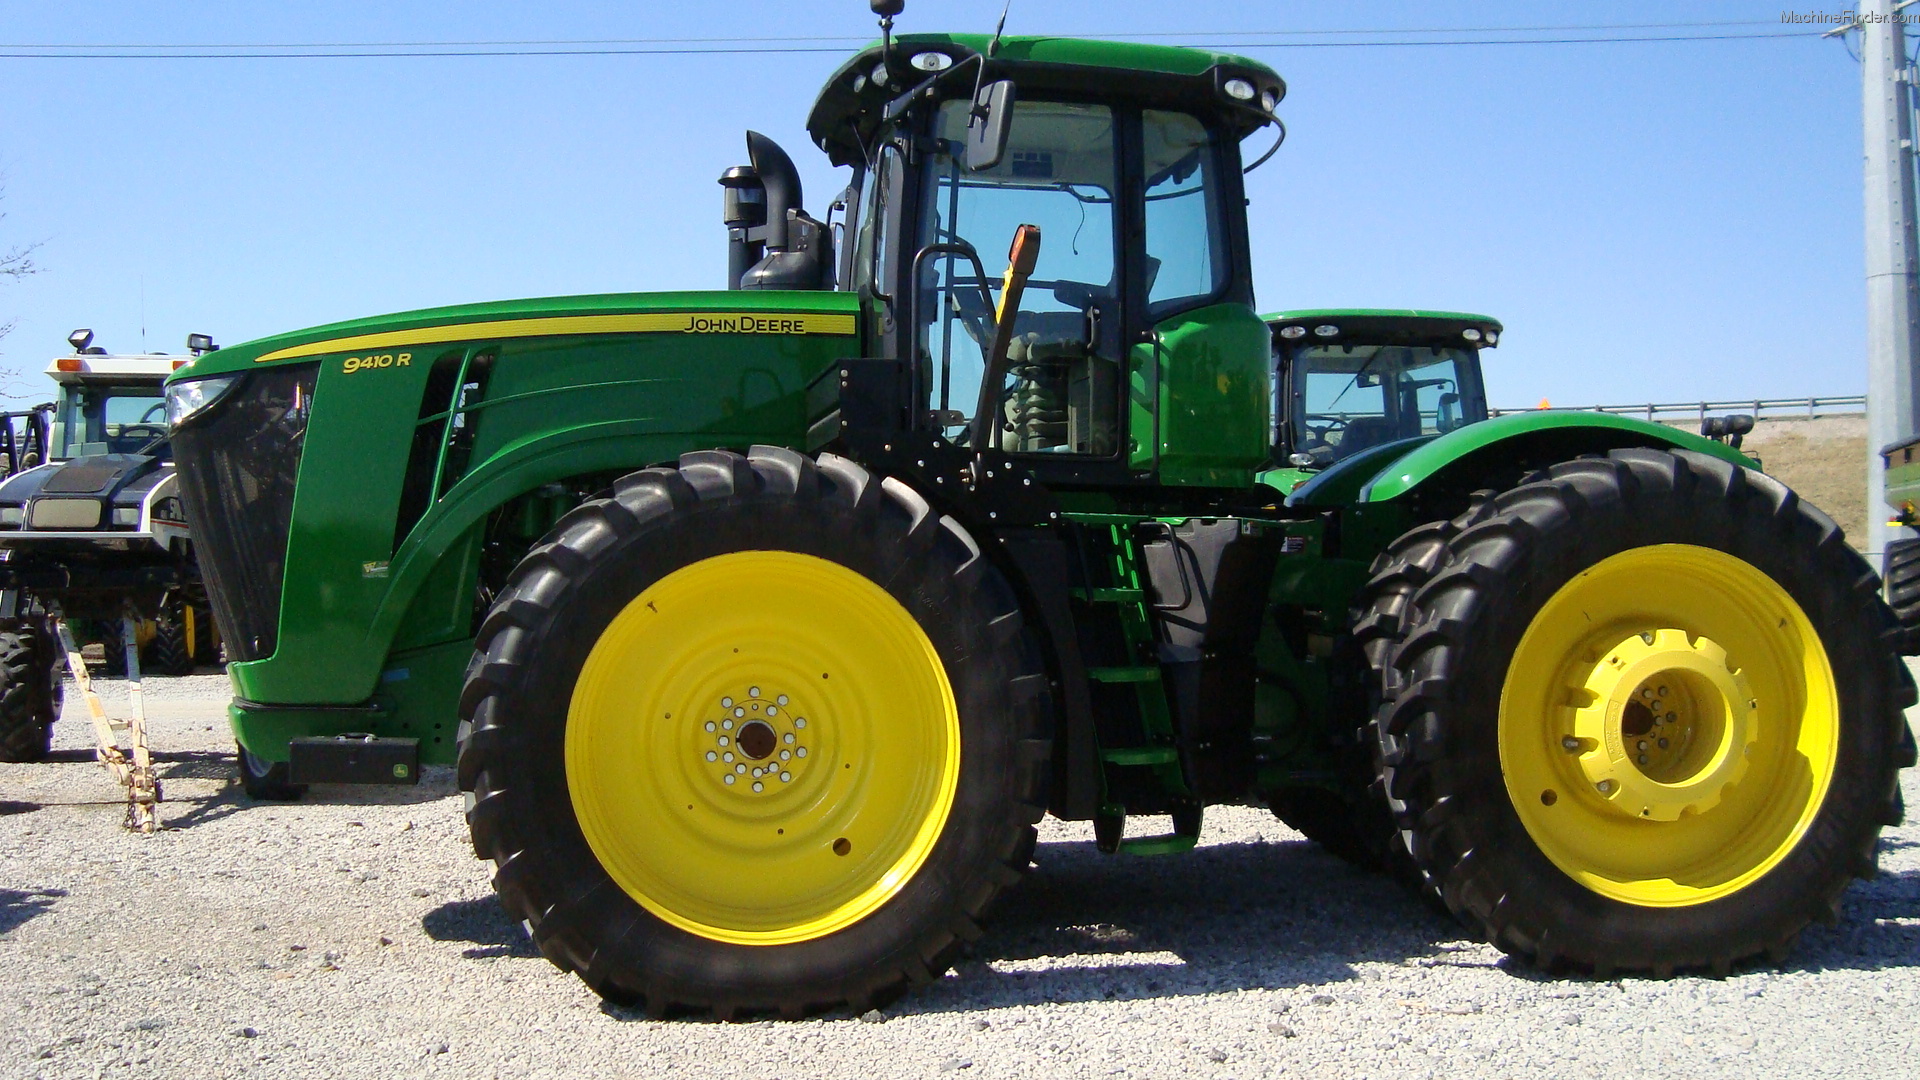 2013 John Deere 9410r Tractors Articulated 4wd John Deere Machinefinder 3864